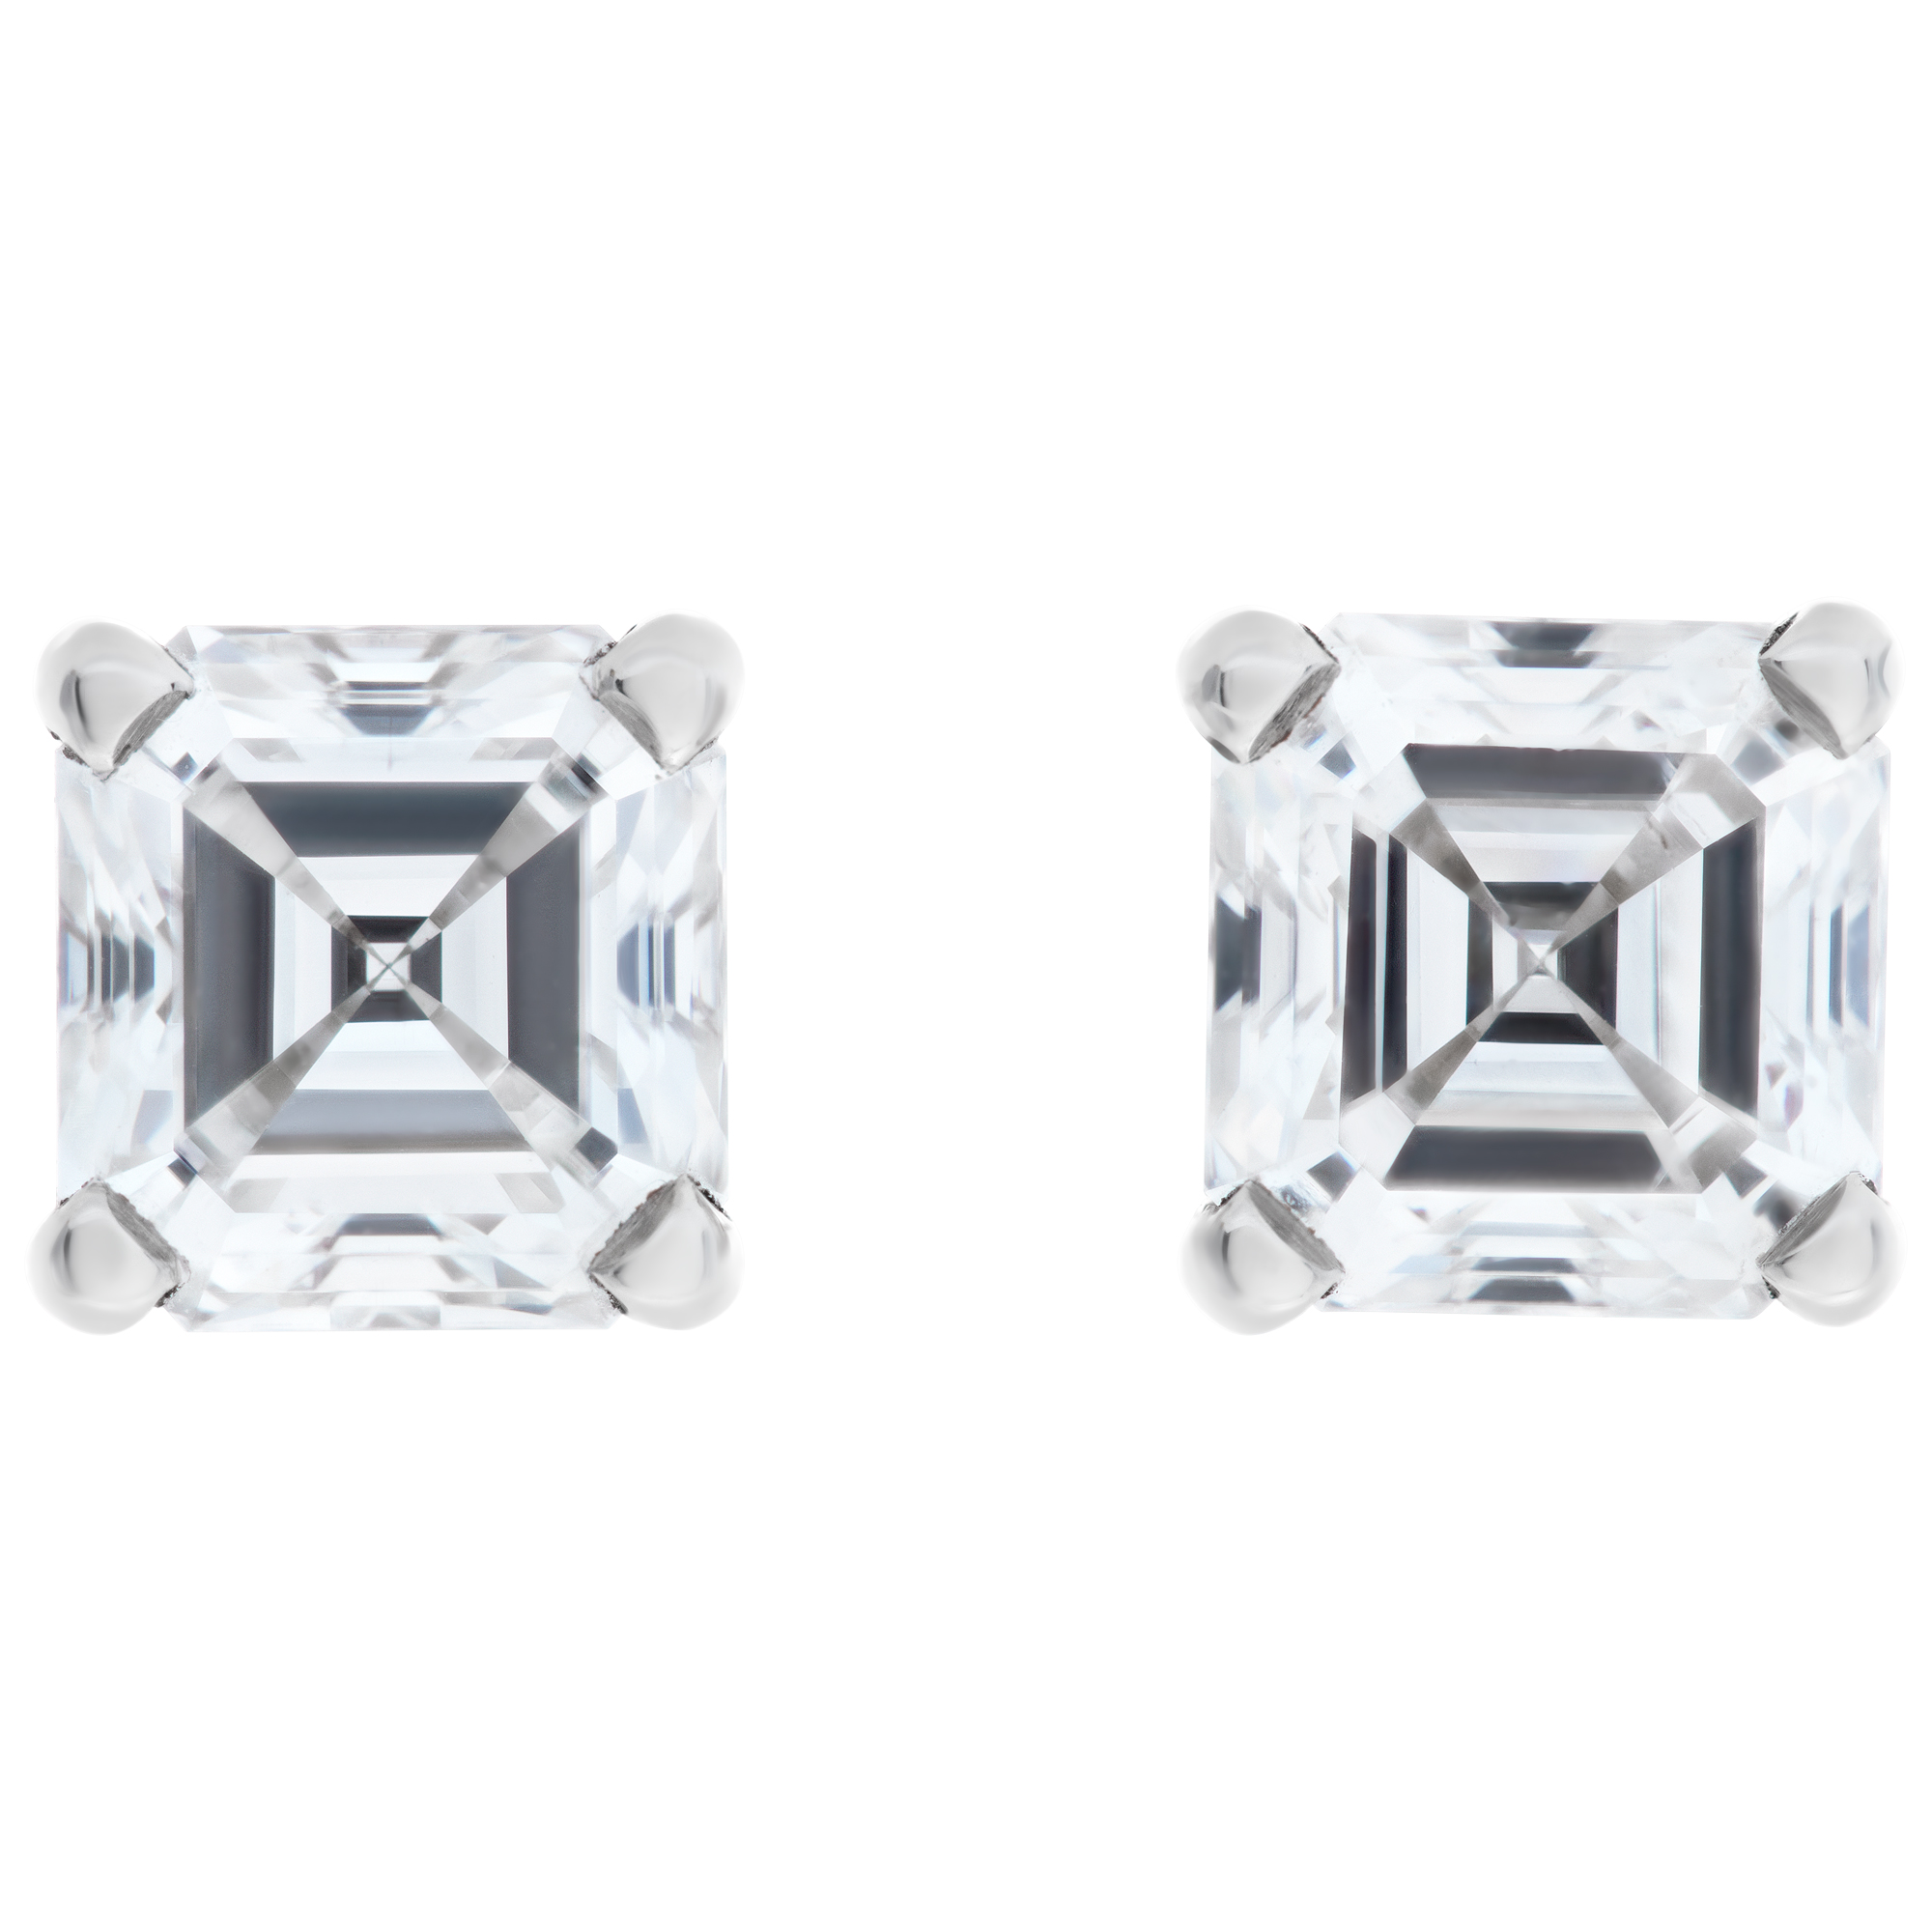 GIA certified pair of Asscher cut diamond studs- 2.05 carat weight.